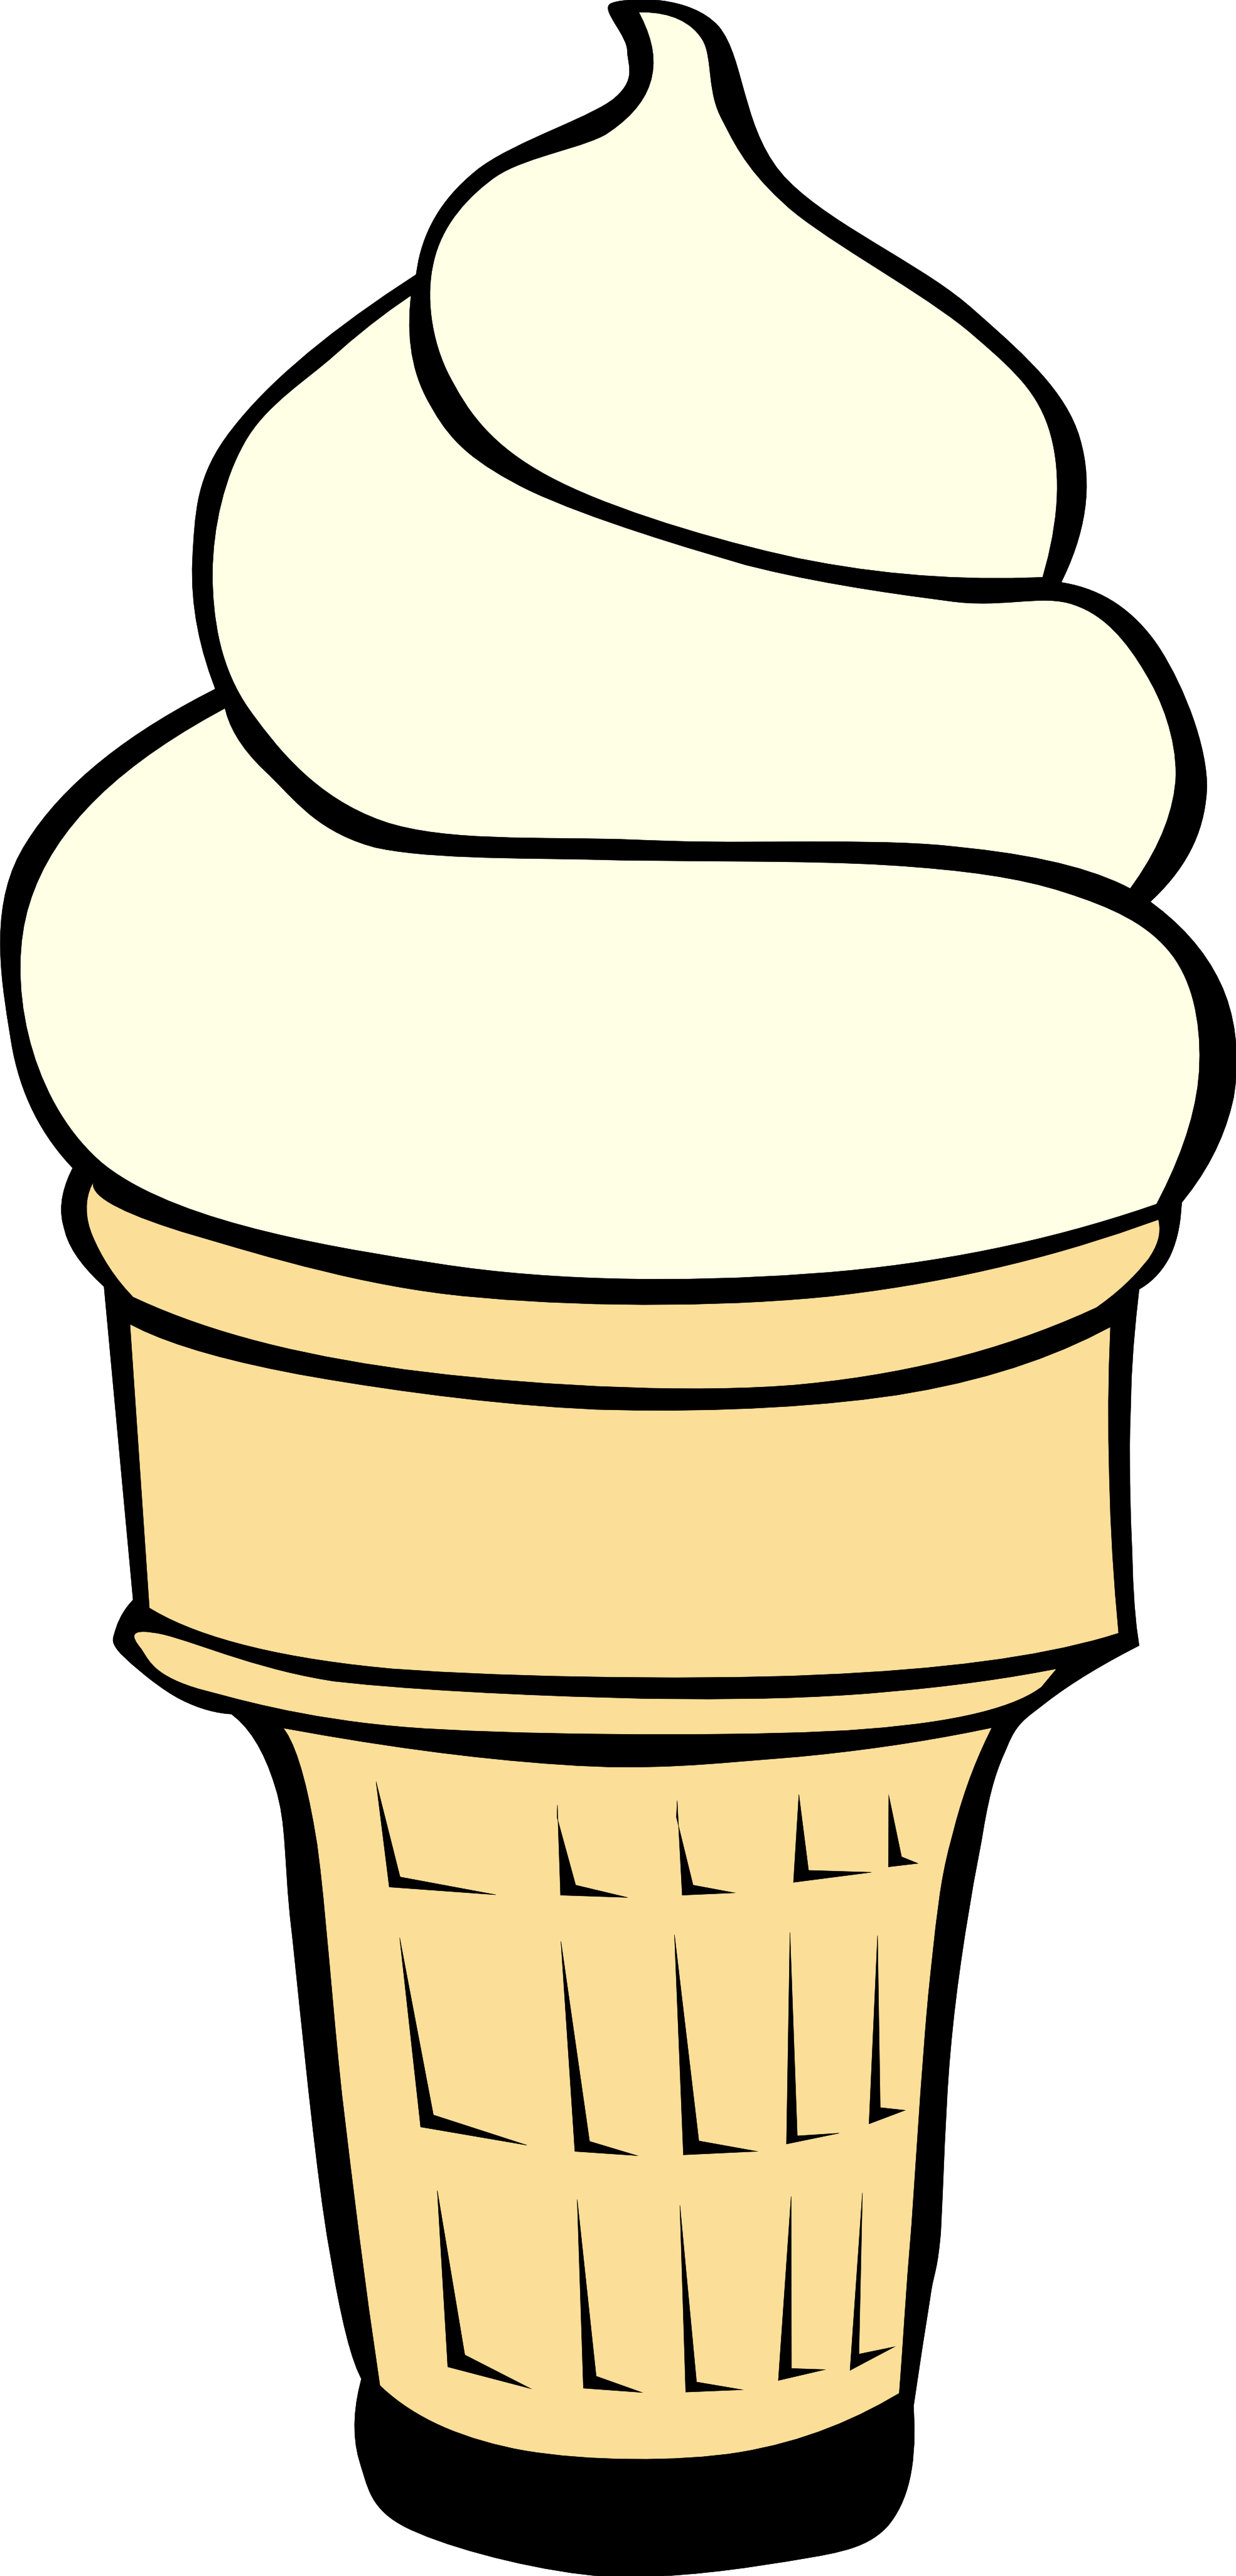 Ice cream cone clip art free clipart images